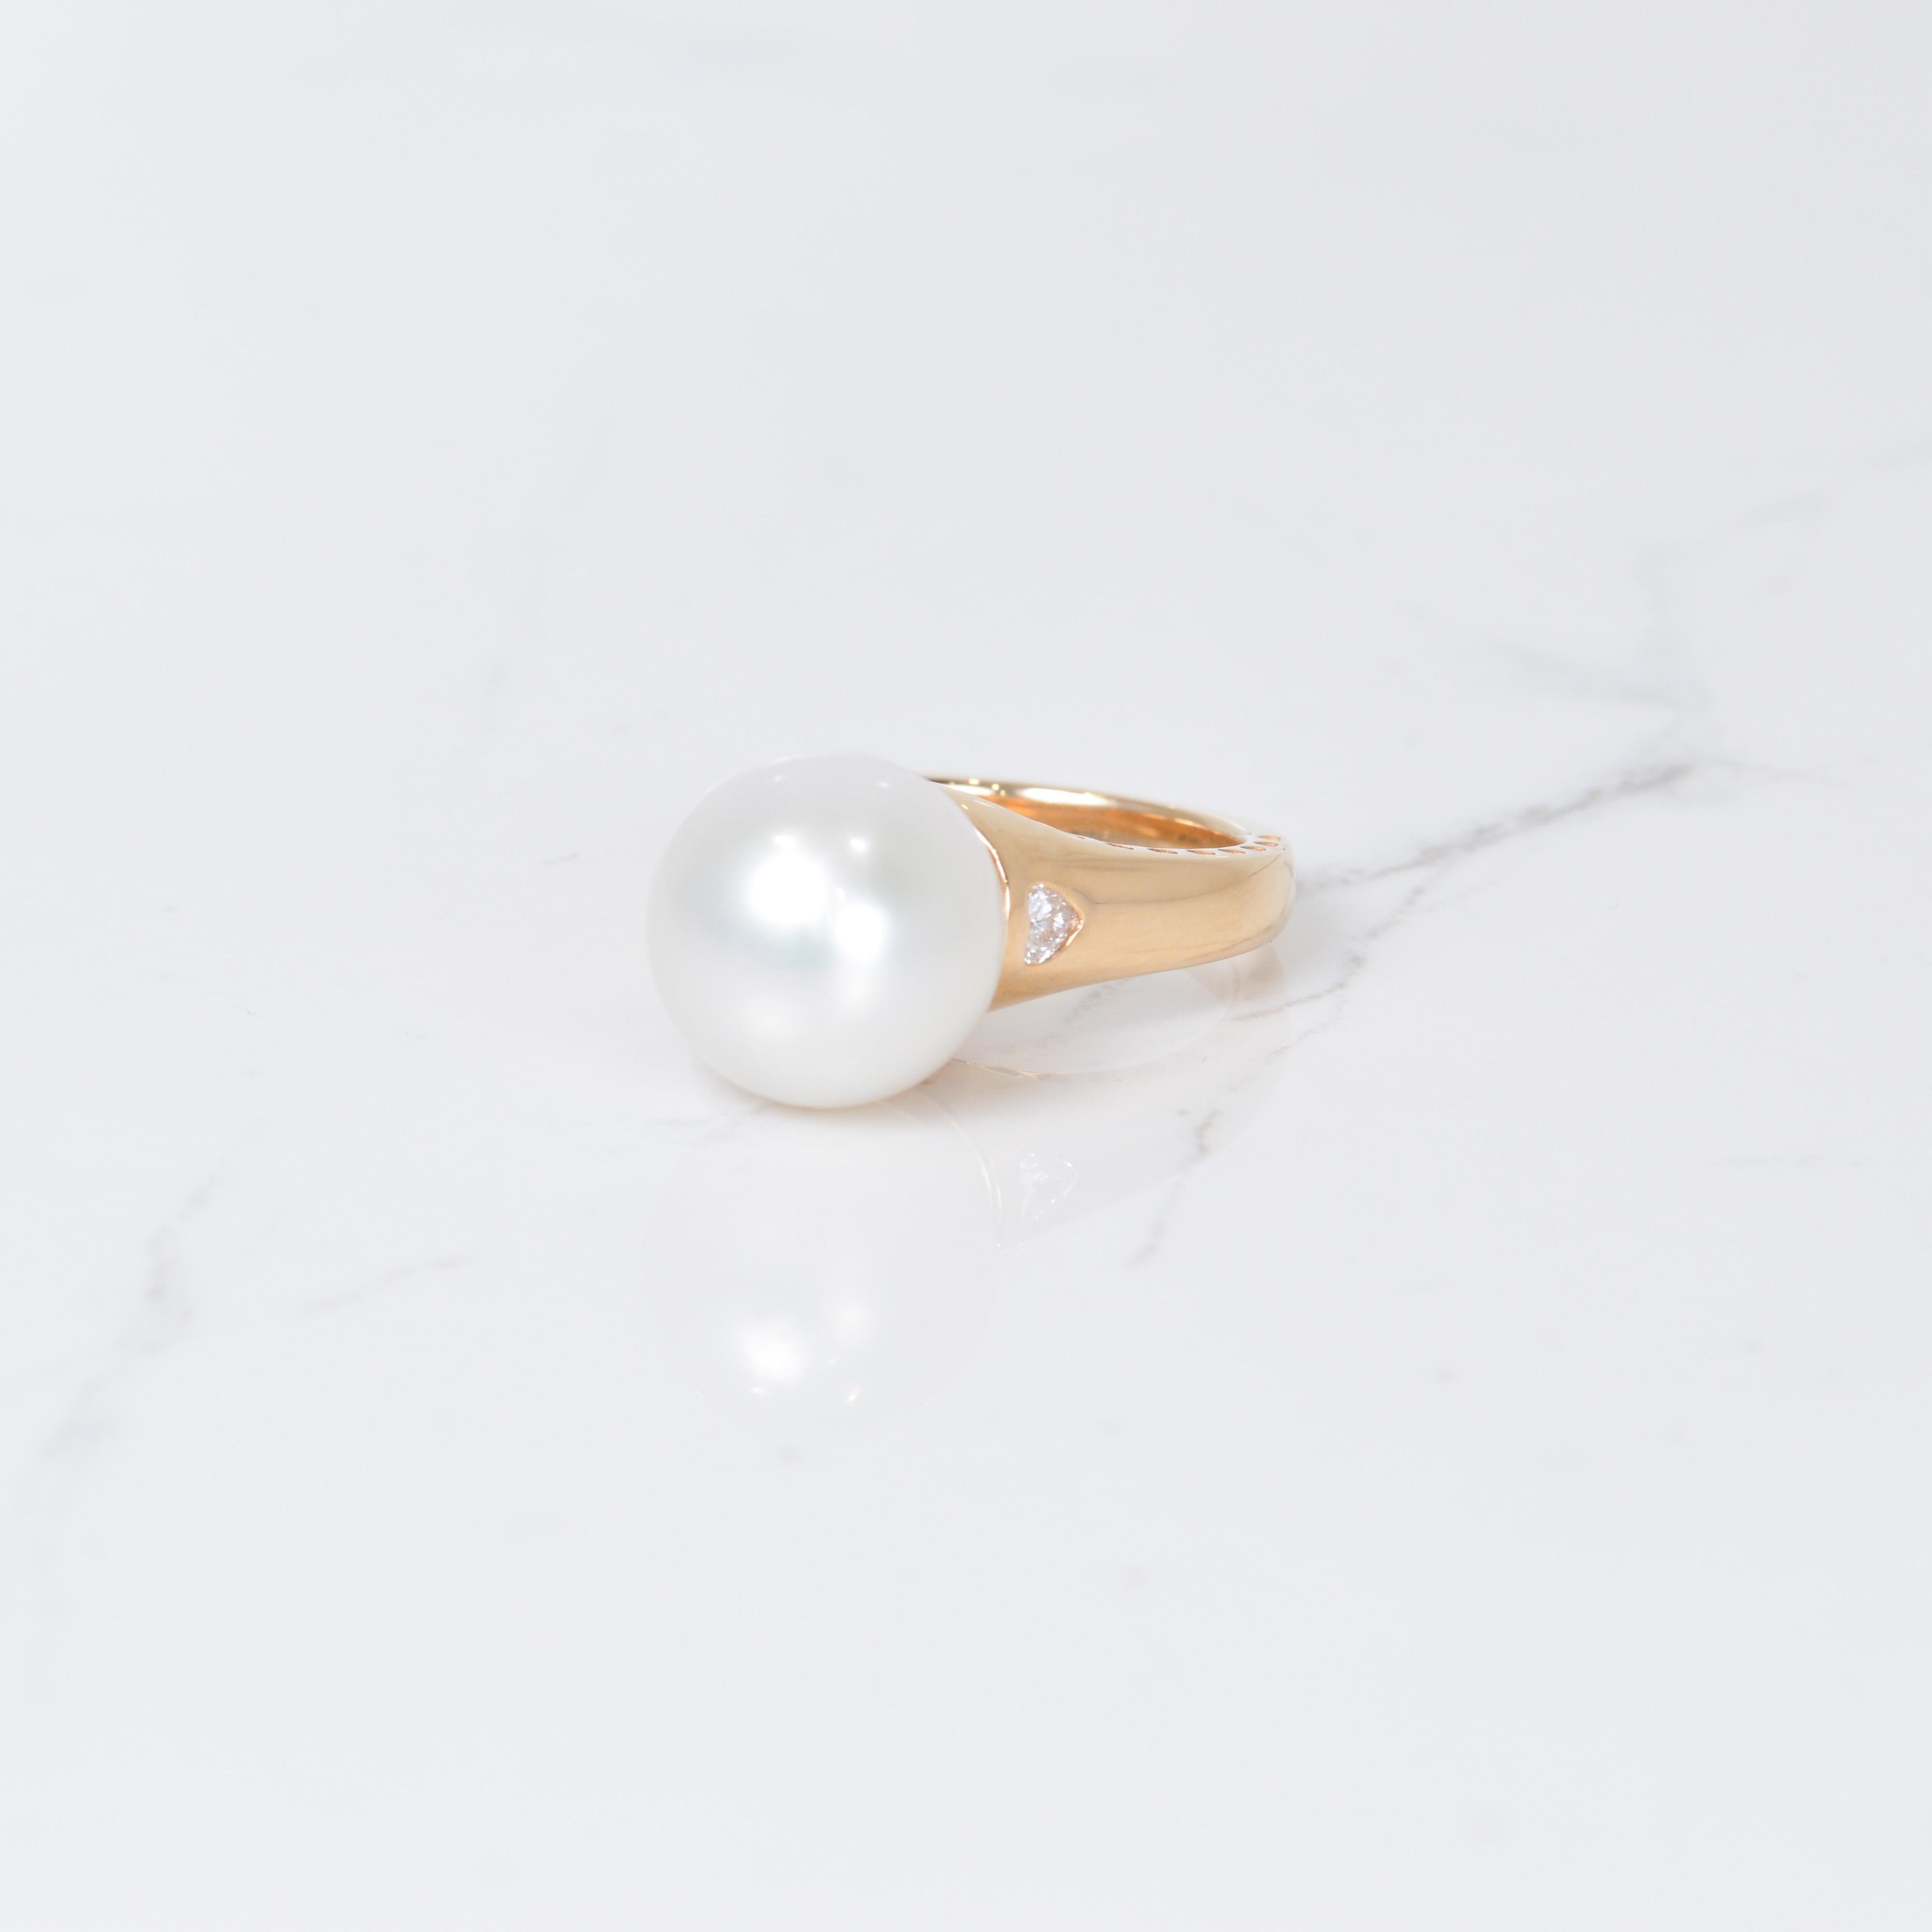 Les perles et les diamants vont bien ensemble ! Cette magnifique bague est ornée en son centre d'une magnifique perle de mer du Sud de 12 mm de diamètre. Cette perle scintillante est rehaussée de deux magnifiques diamants en forme de cœur totalisant